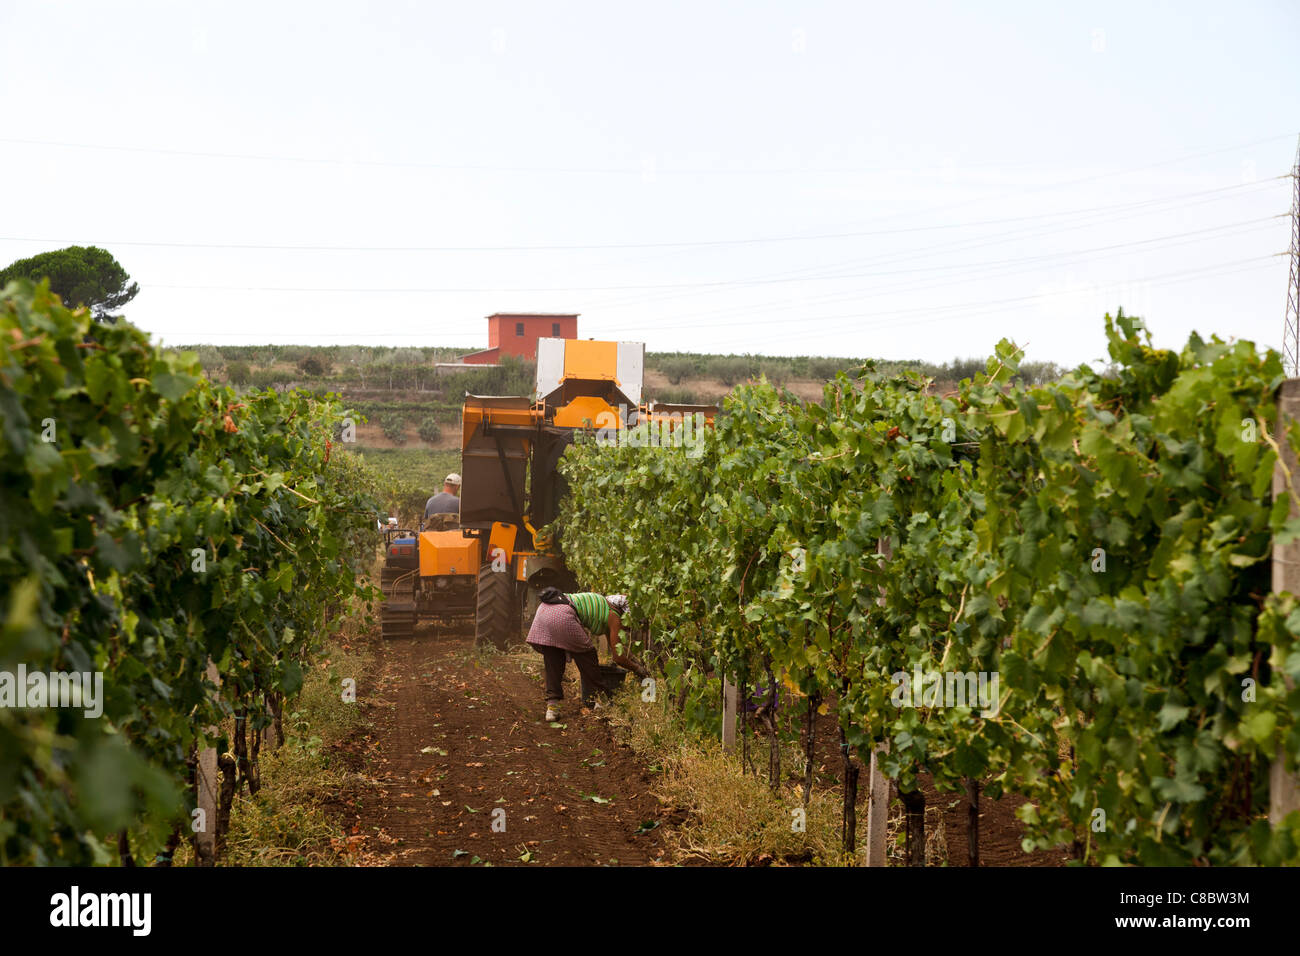 Raccoglitori a mano seguendo la mietitrice meccanica la raccolta di uve da vino a Frascati, Italia Foto Stock